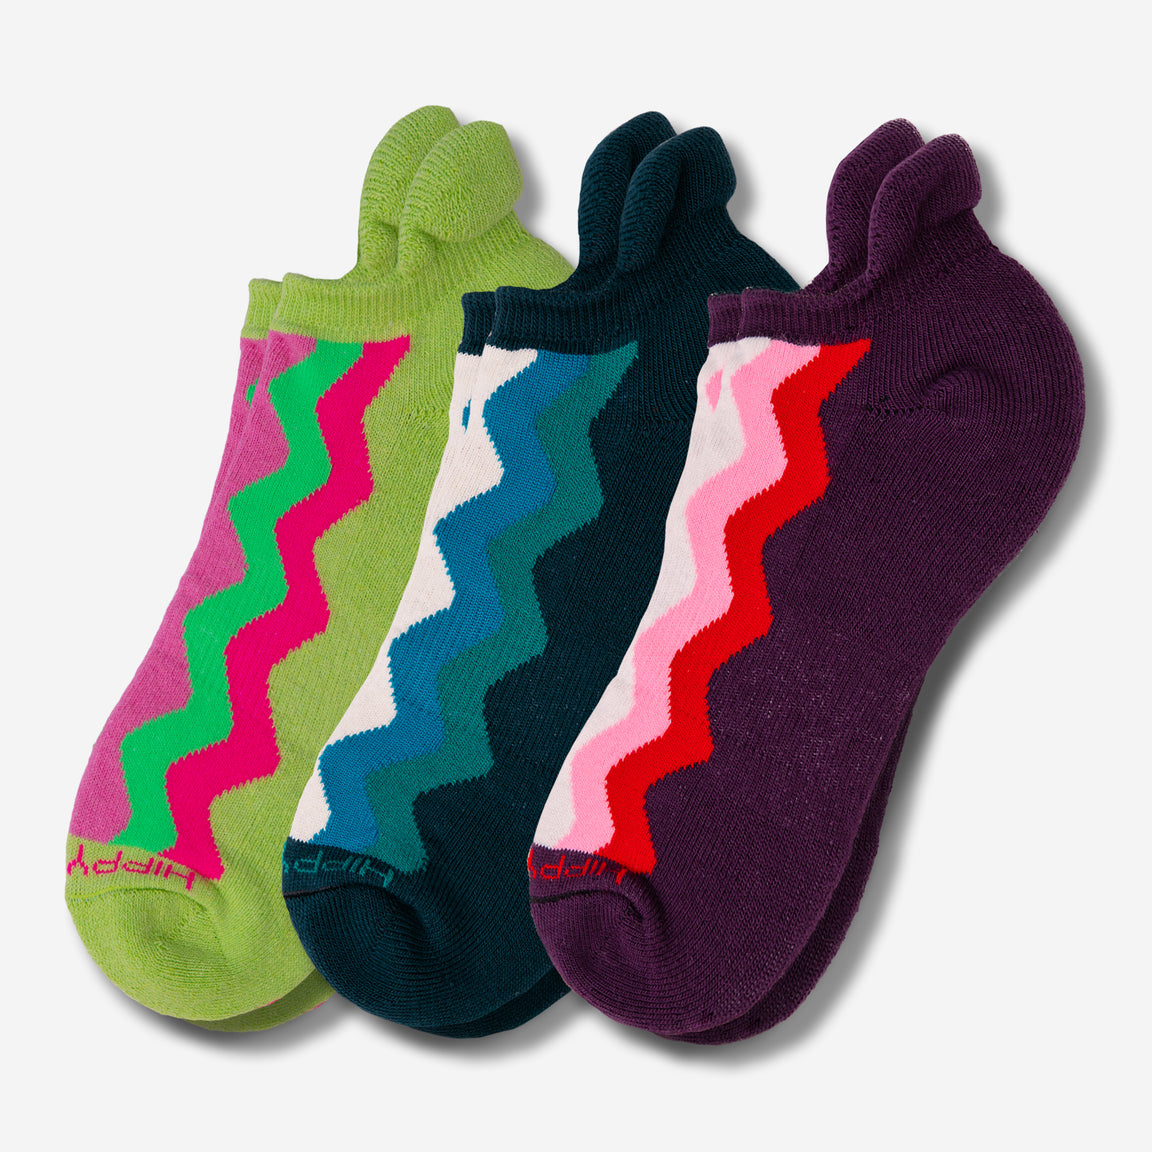 Hippy Feet Socks - Eco-Friendly Materials